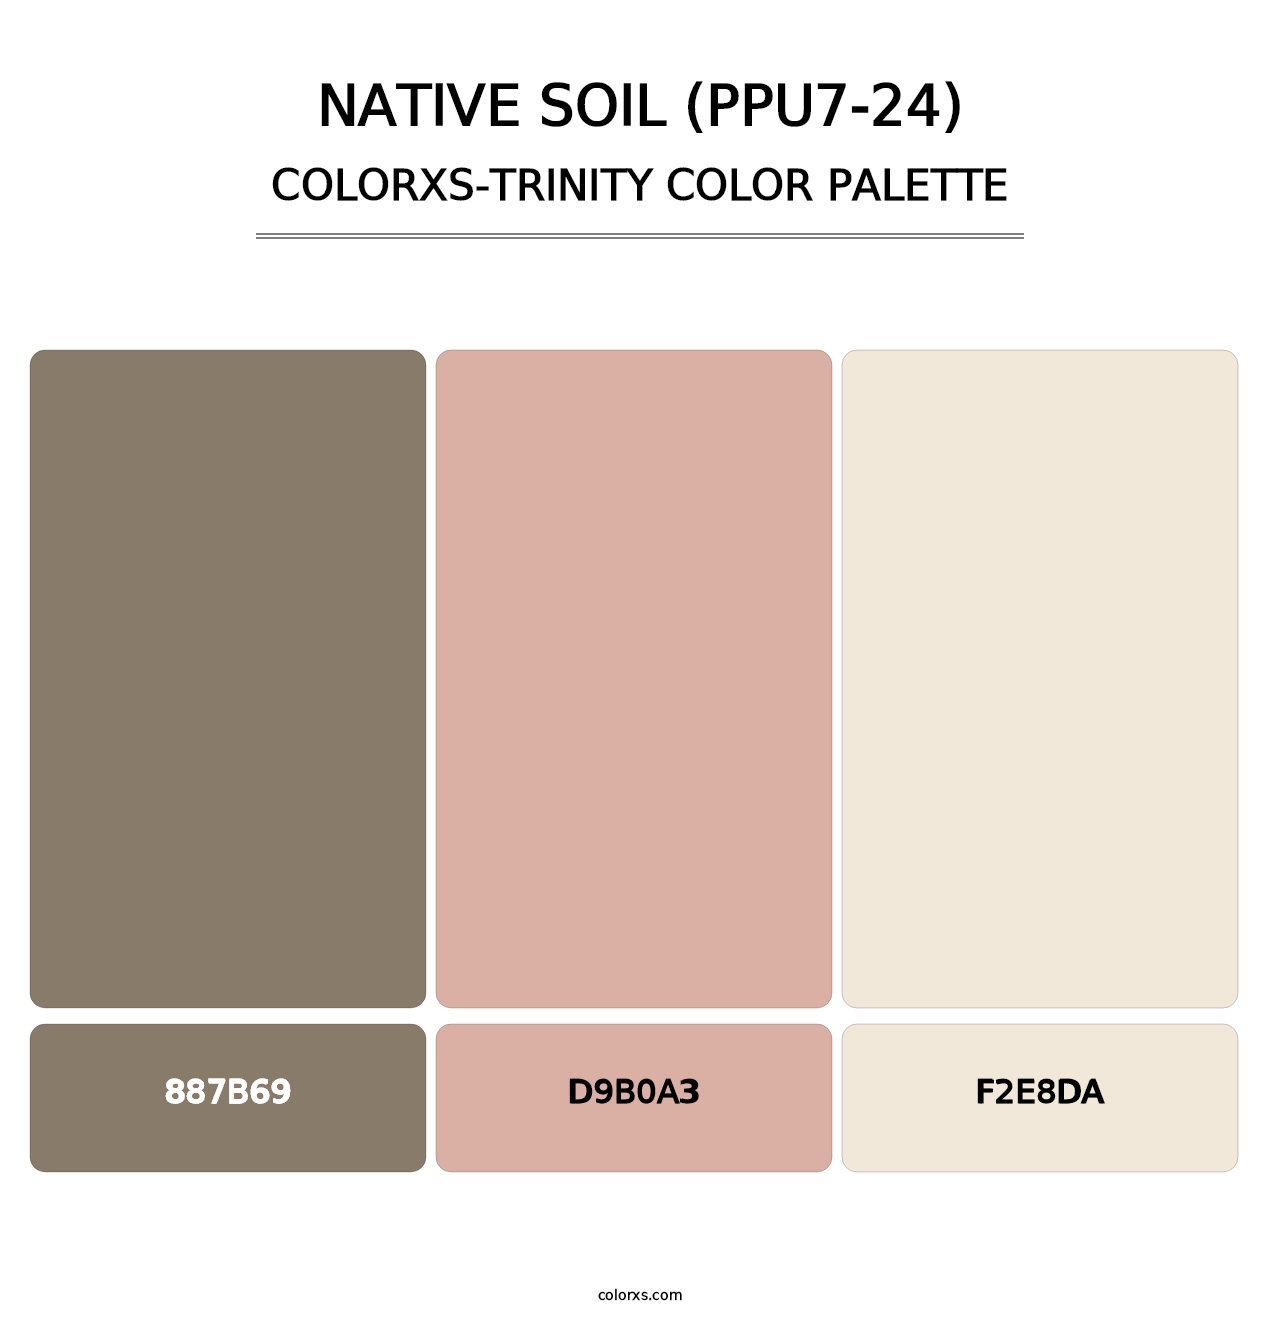 Native Soil (PPU7-24) - Colorxs Trinity Palette